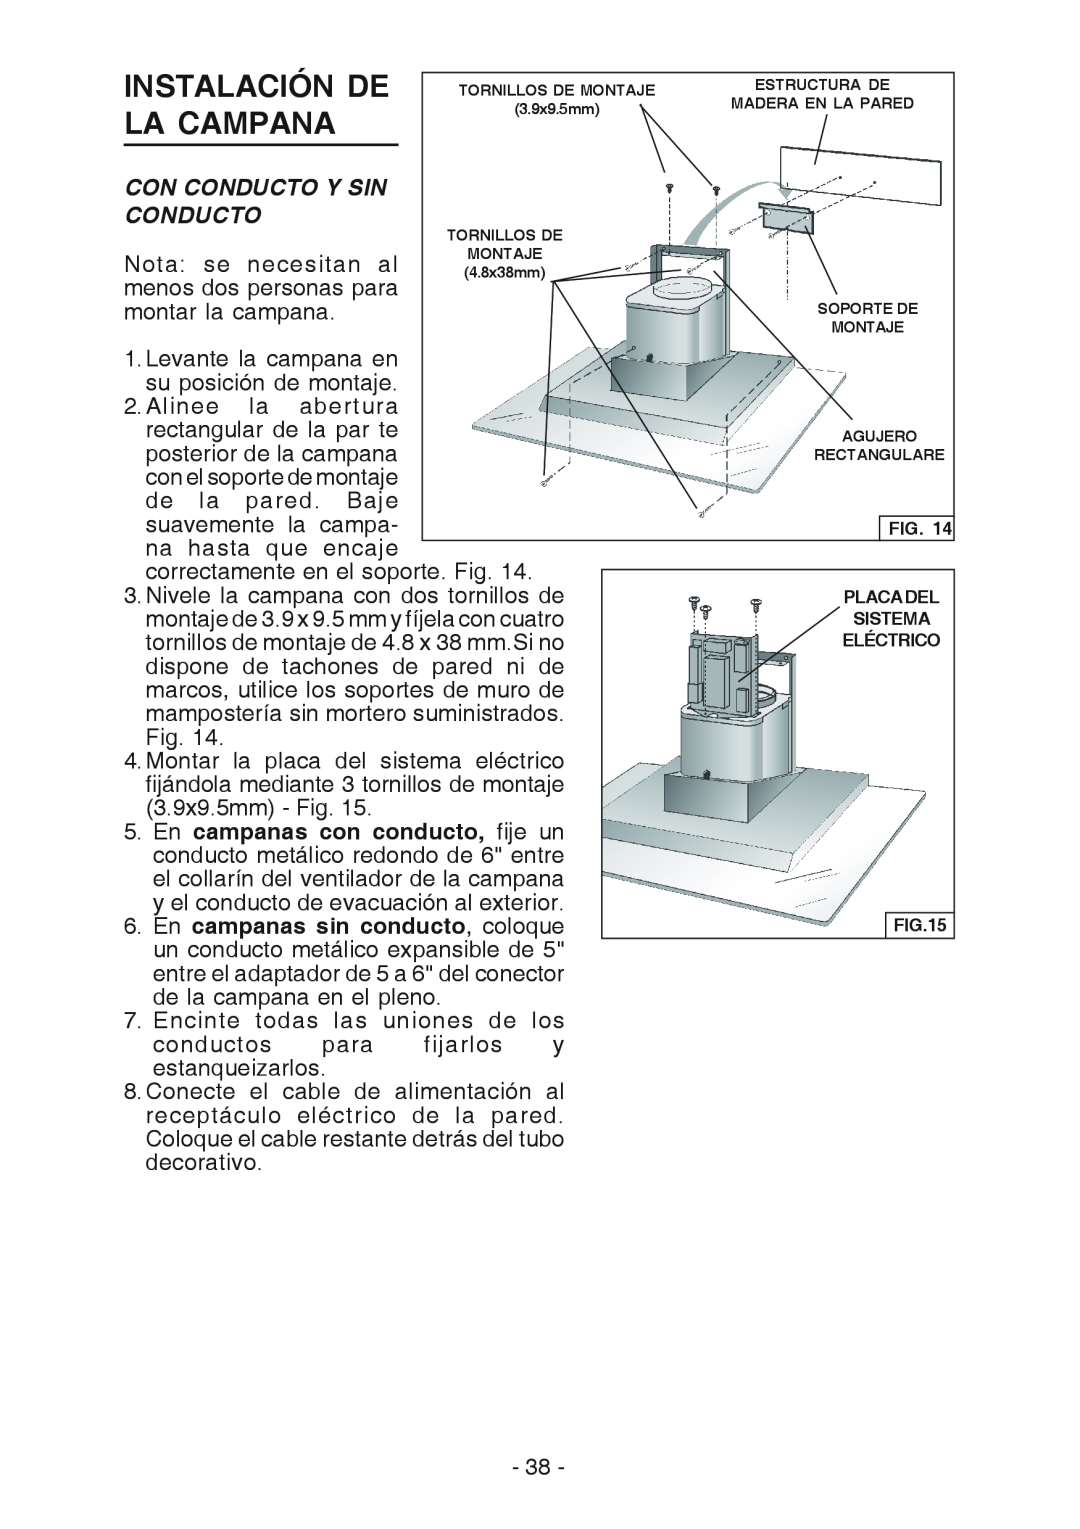 Broan WC26I manual Instalación De, La Campana, Con Conducto Y Sin, Nota se necesitan al, montar la campana 